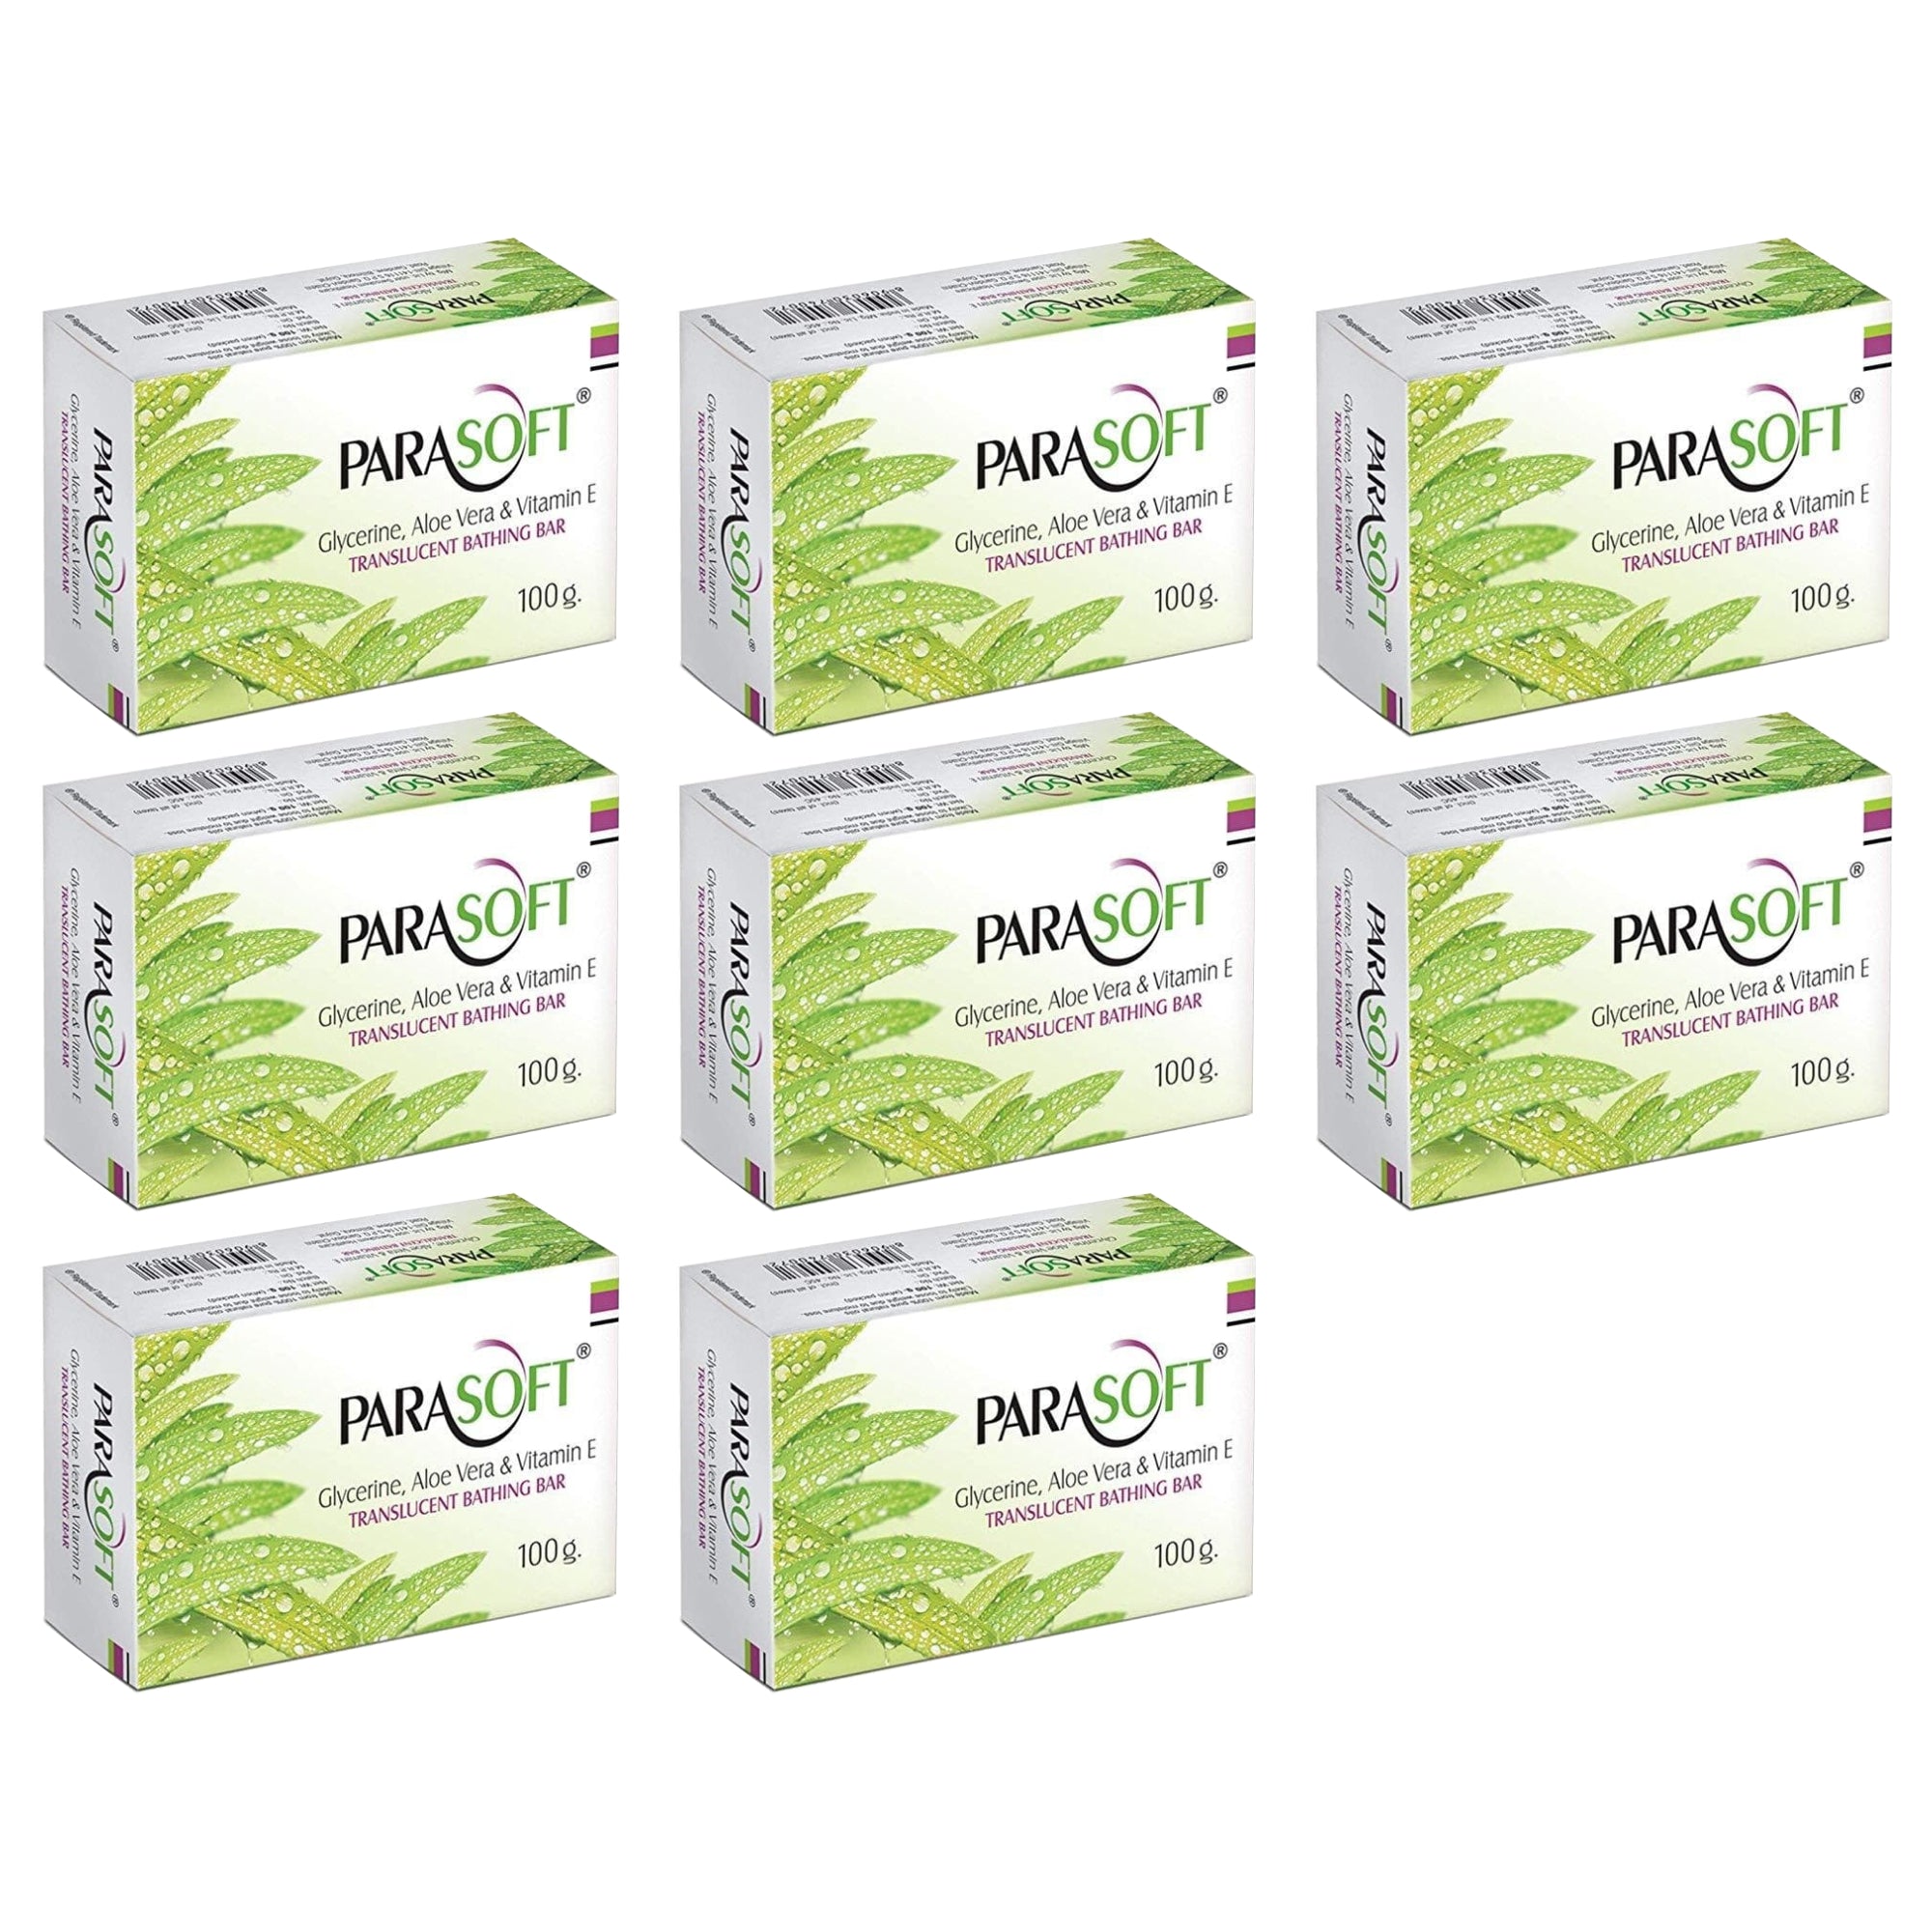 Shoprythm Dry,Parasoft Pack of 8 Salve Parasoft Soap 100g